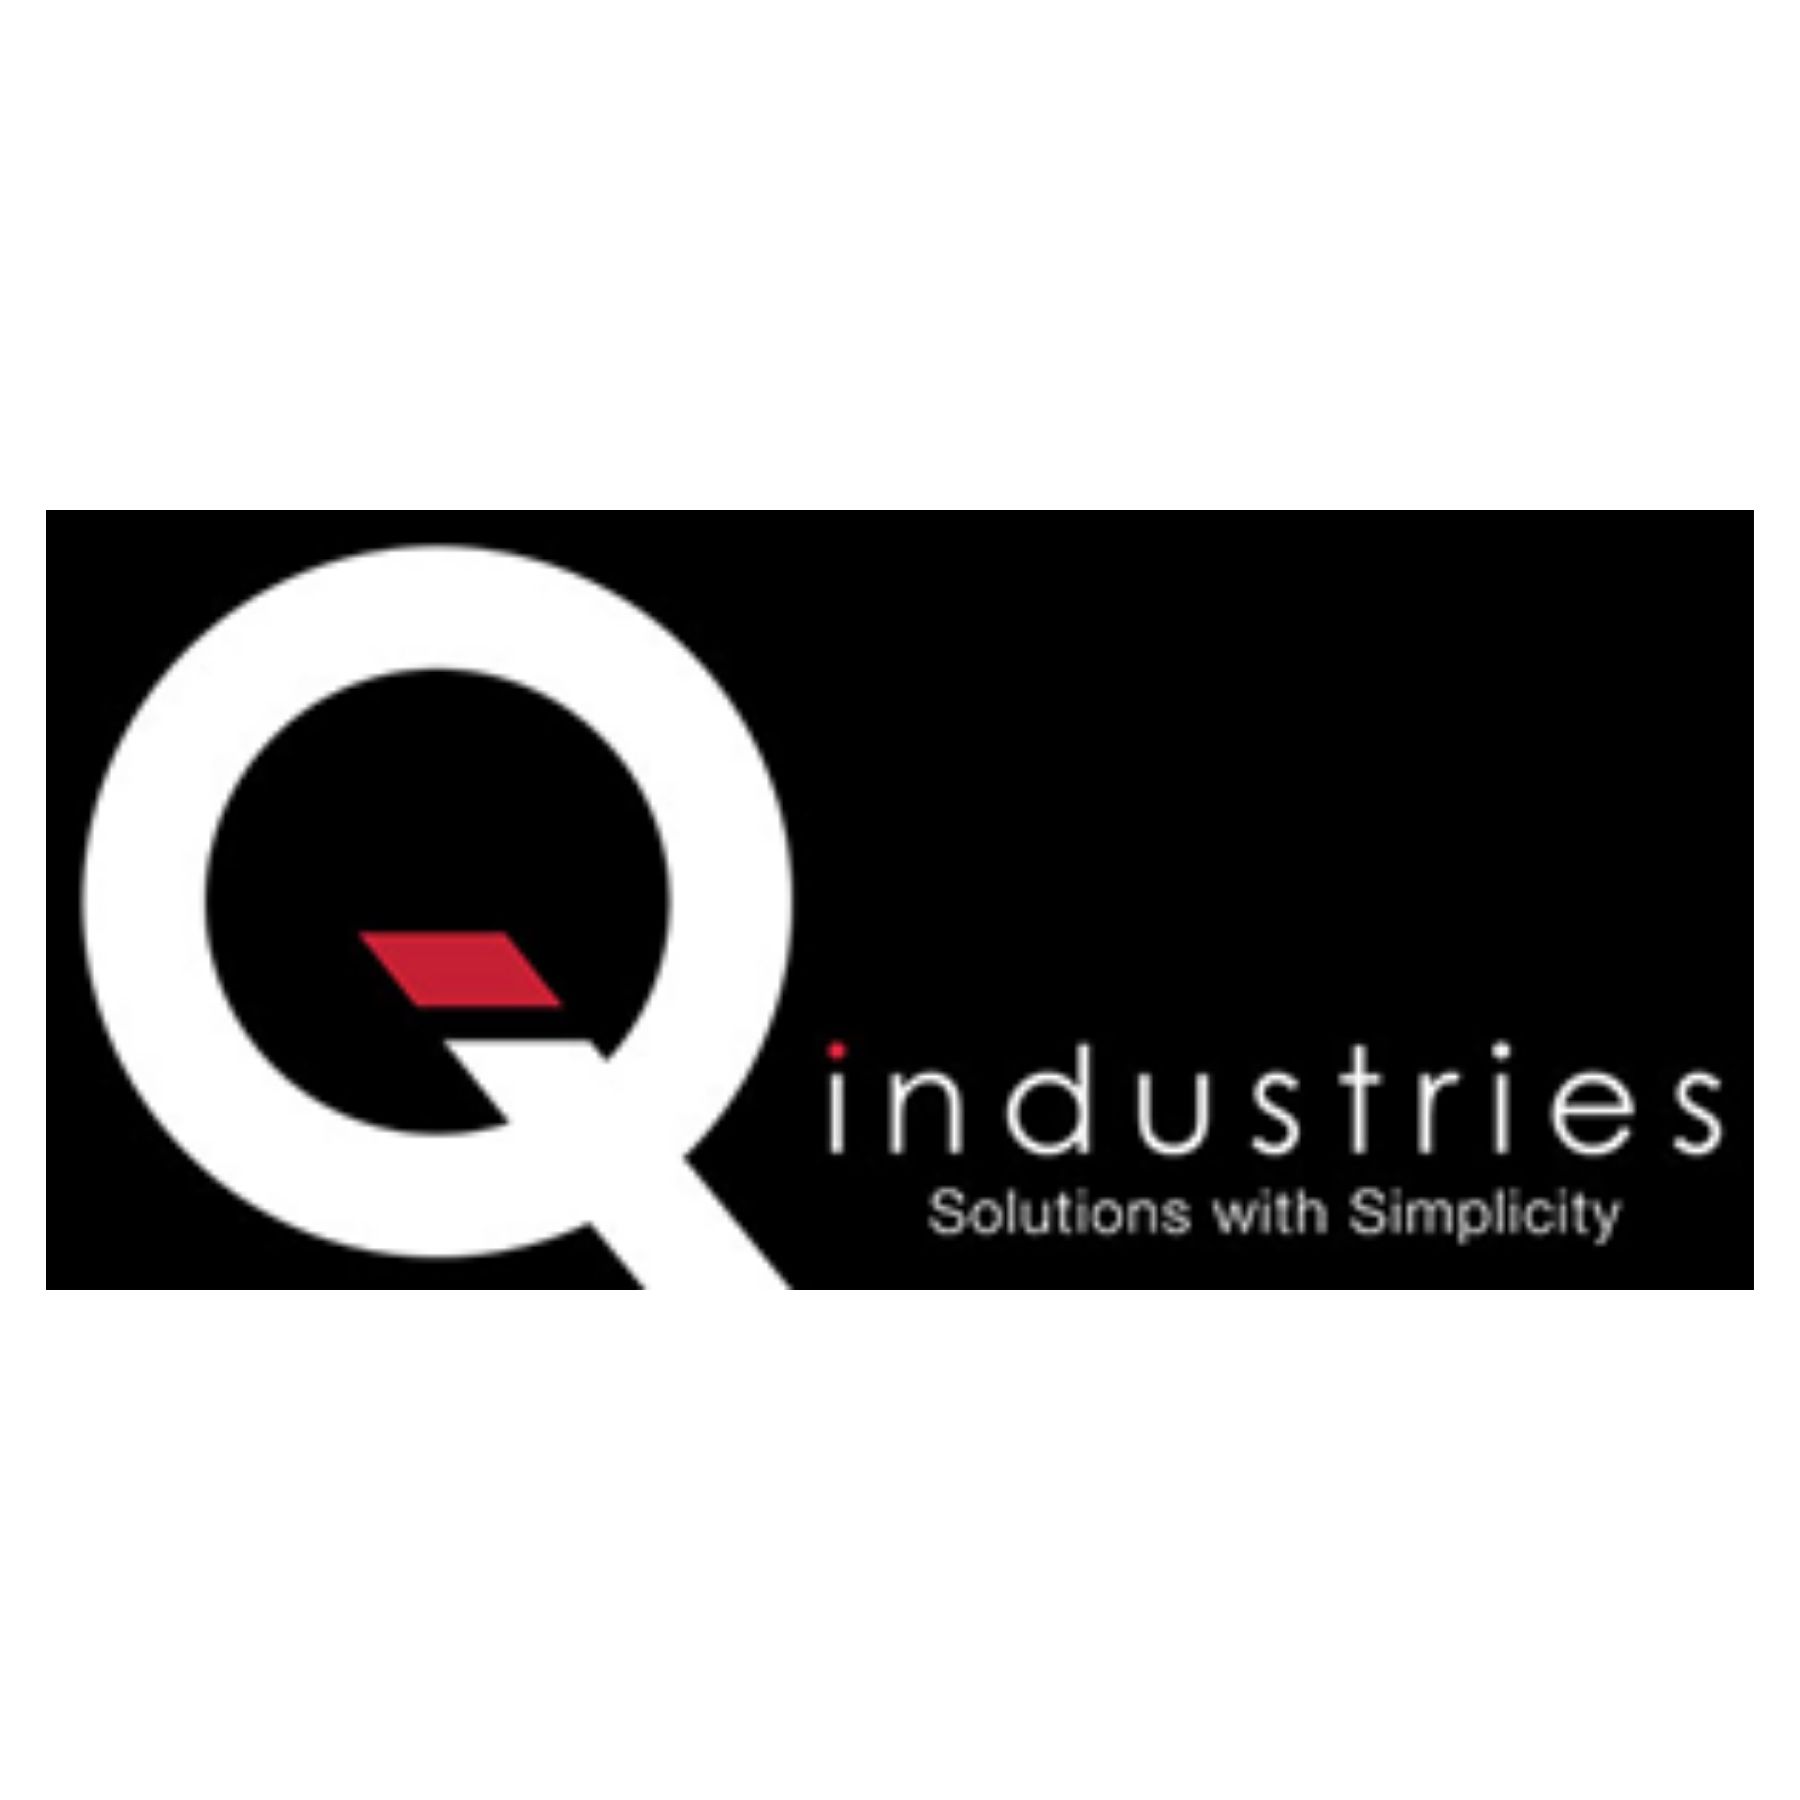 Hinrich Employer Partner Q Industries RMIT MGT Intake 2 (1)